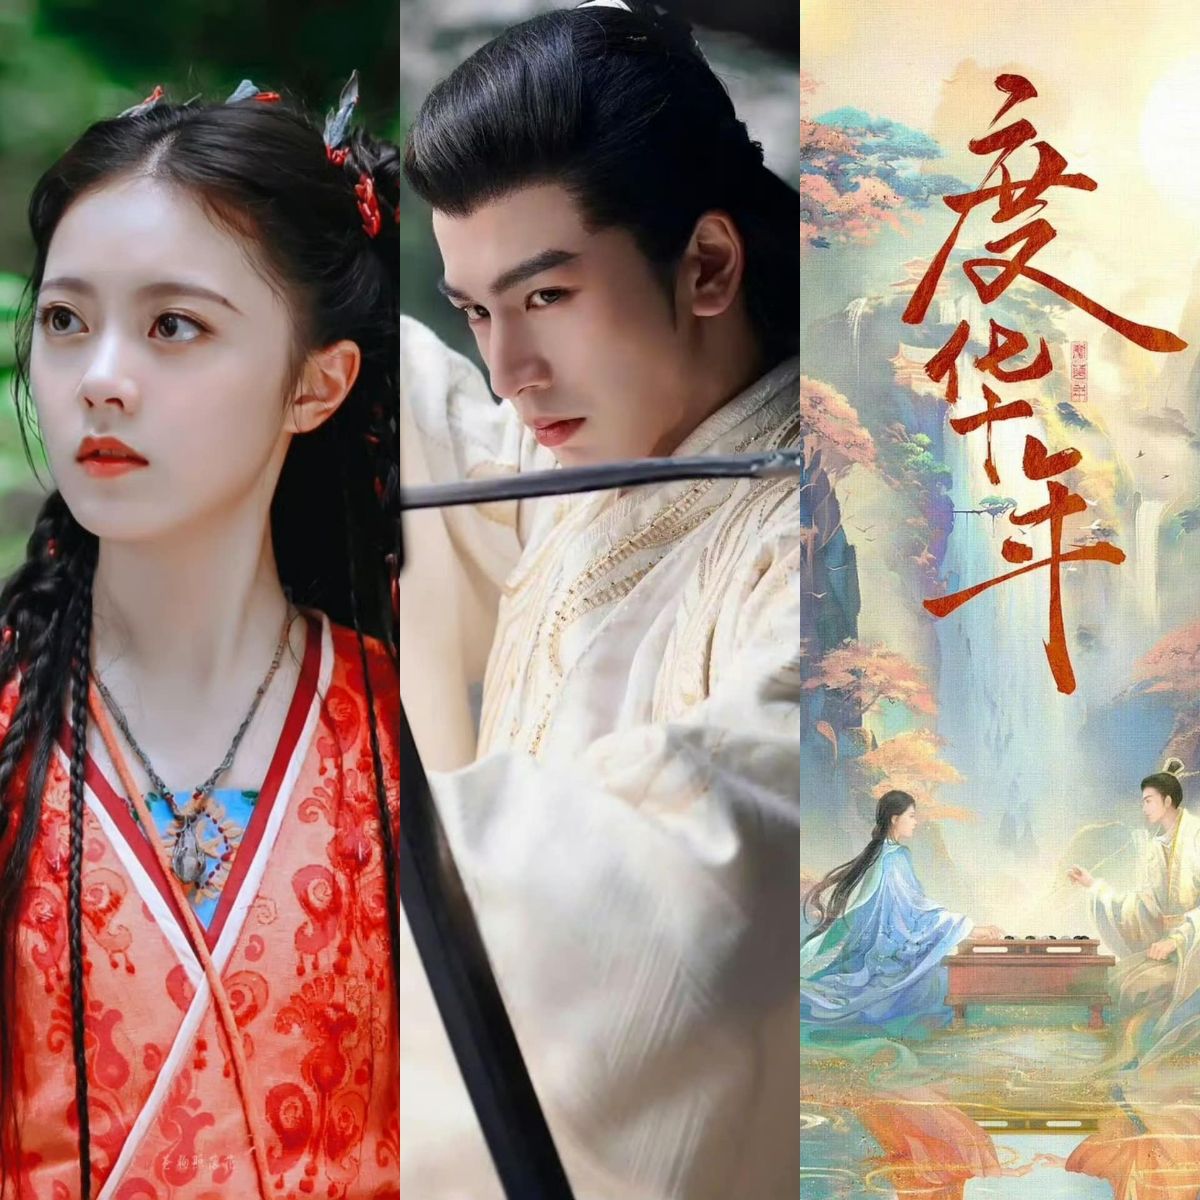 Nội dung bộ phim xoay quanh câu chuyện về trưởng công chúa Lý Dung (Triệu Kim Mạch) và Bùi Văn Tuyên (Trương Lăng Hách), sau khi chết đi đã trùng sinh thành người yêu